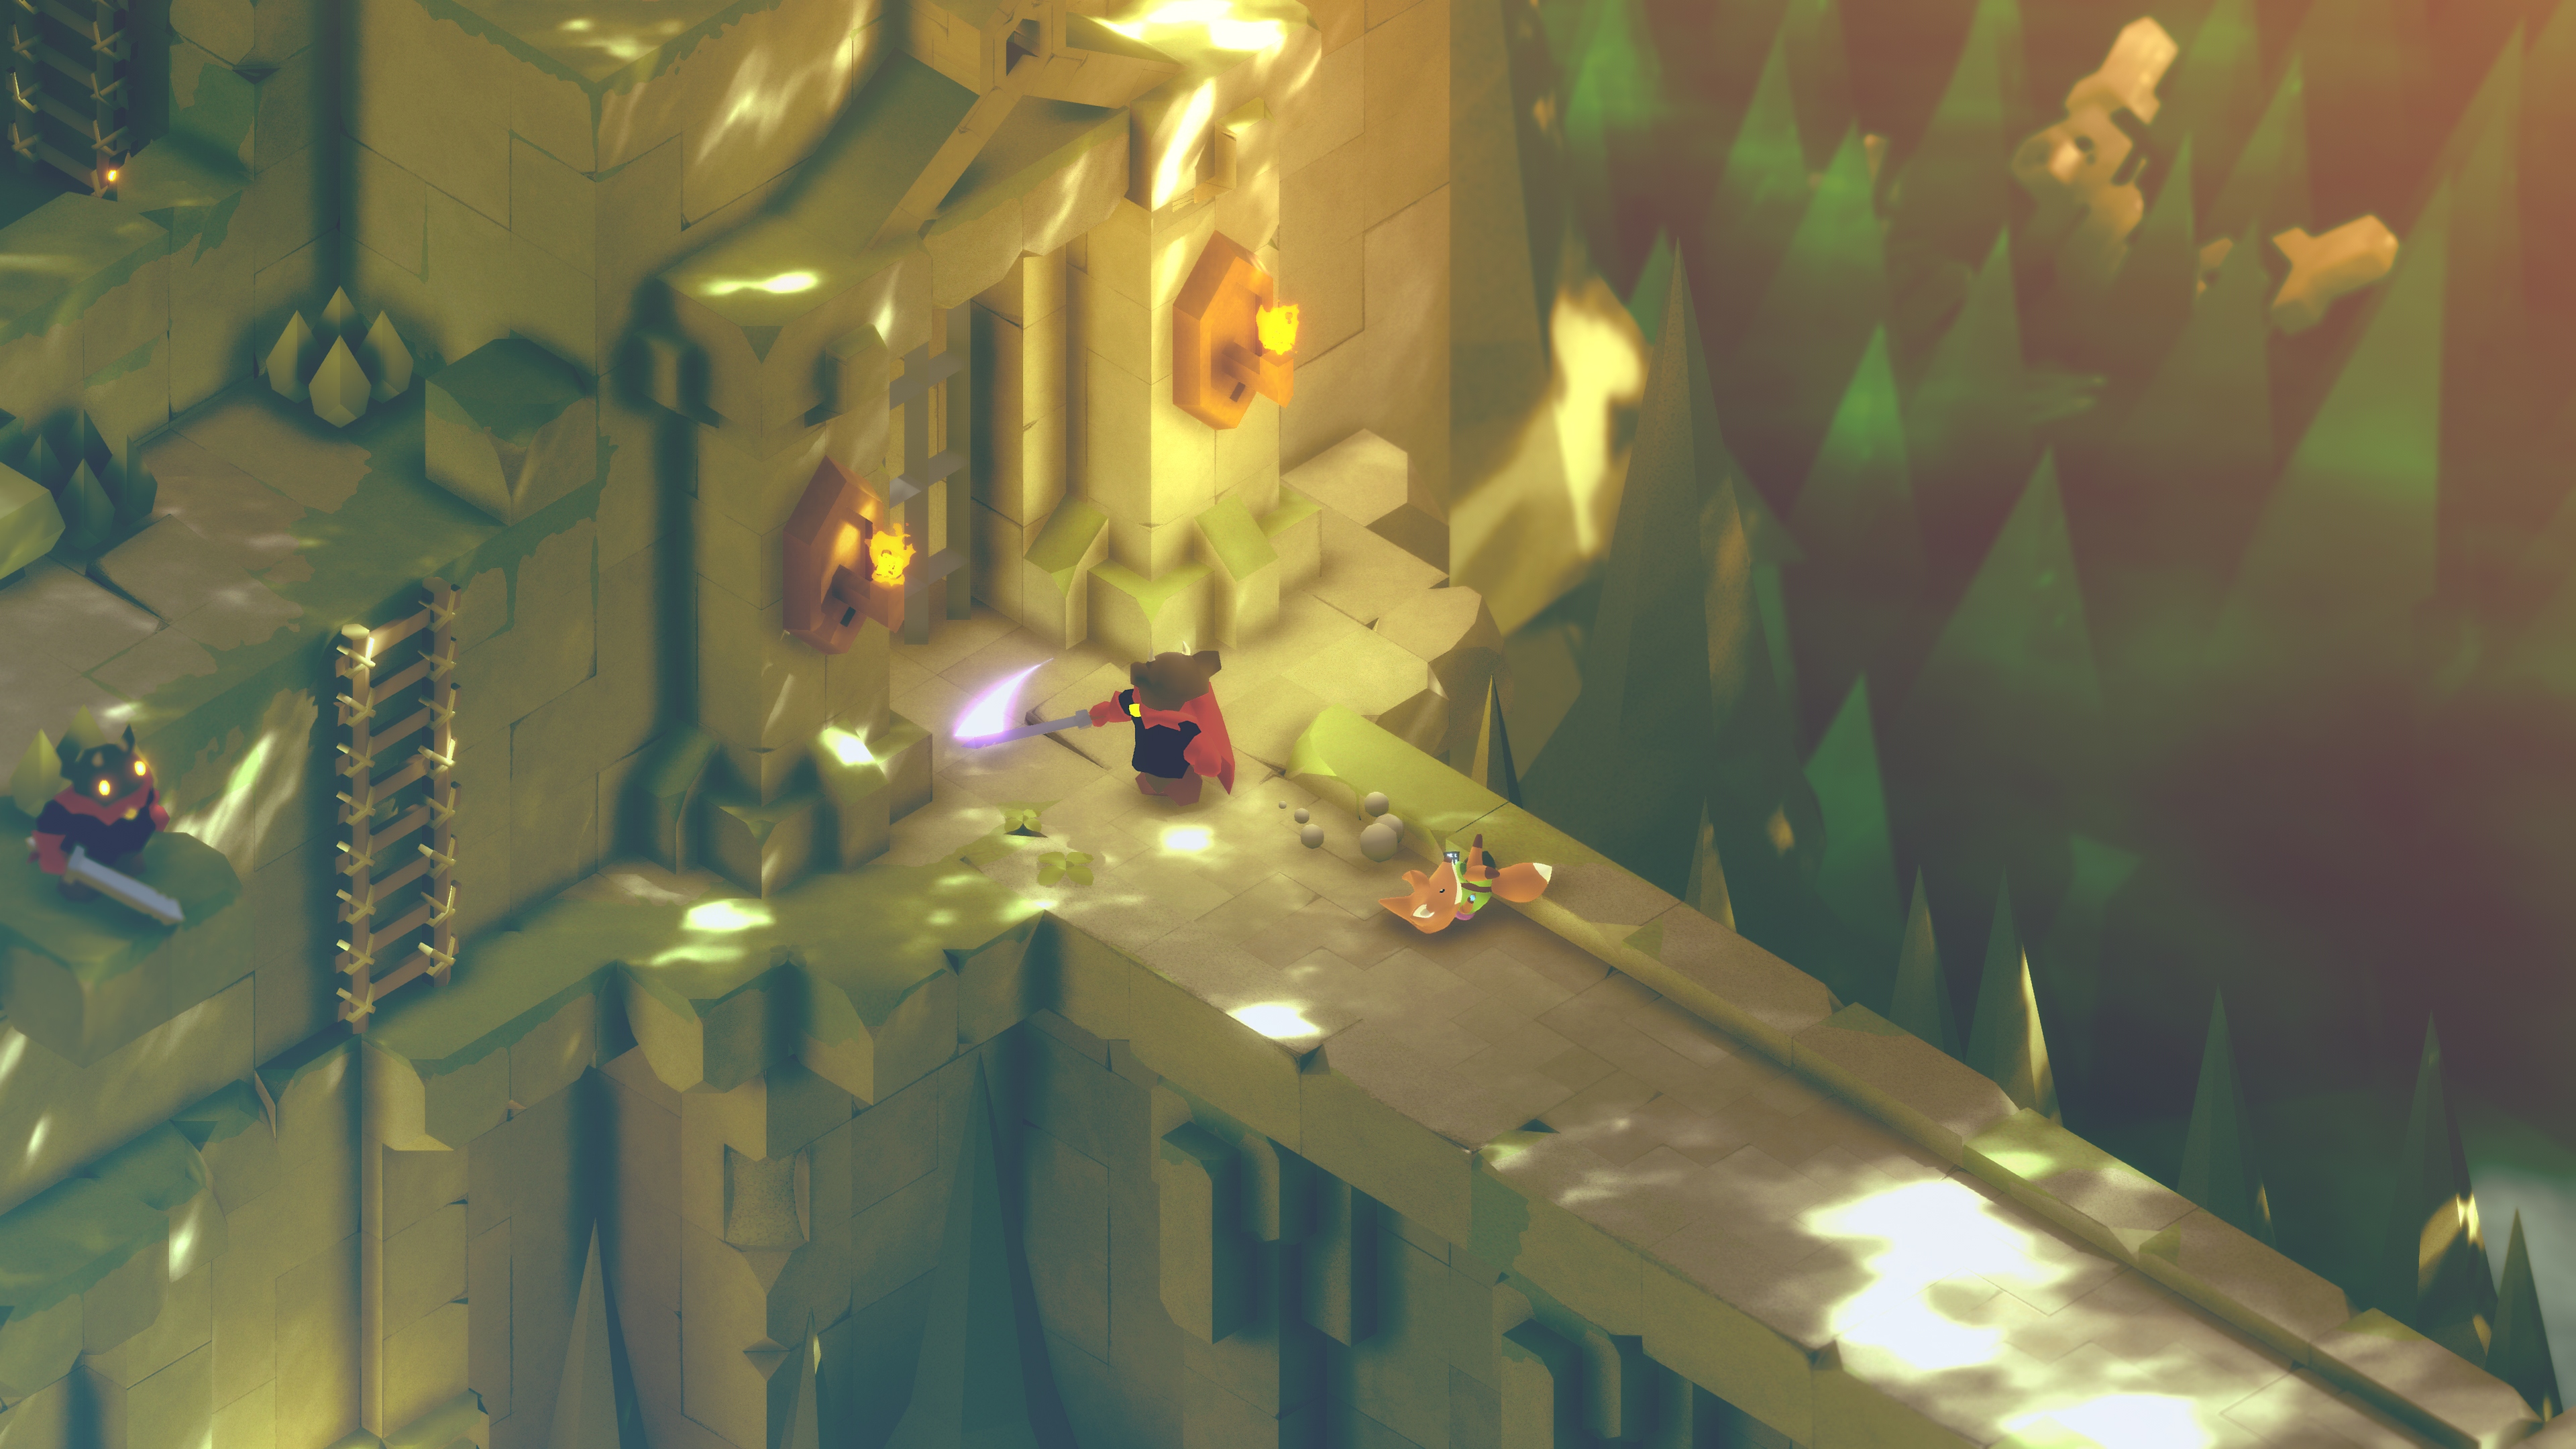 Képernyőkép a Tunic című játékból, a főhős rókával és egy ellenséggel egy hídon